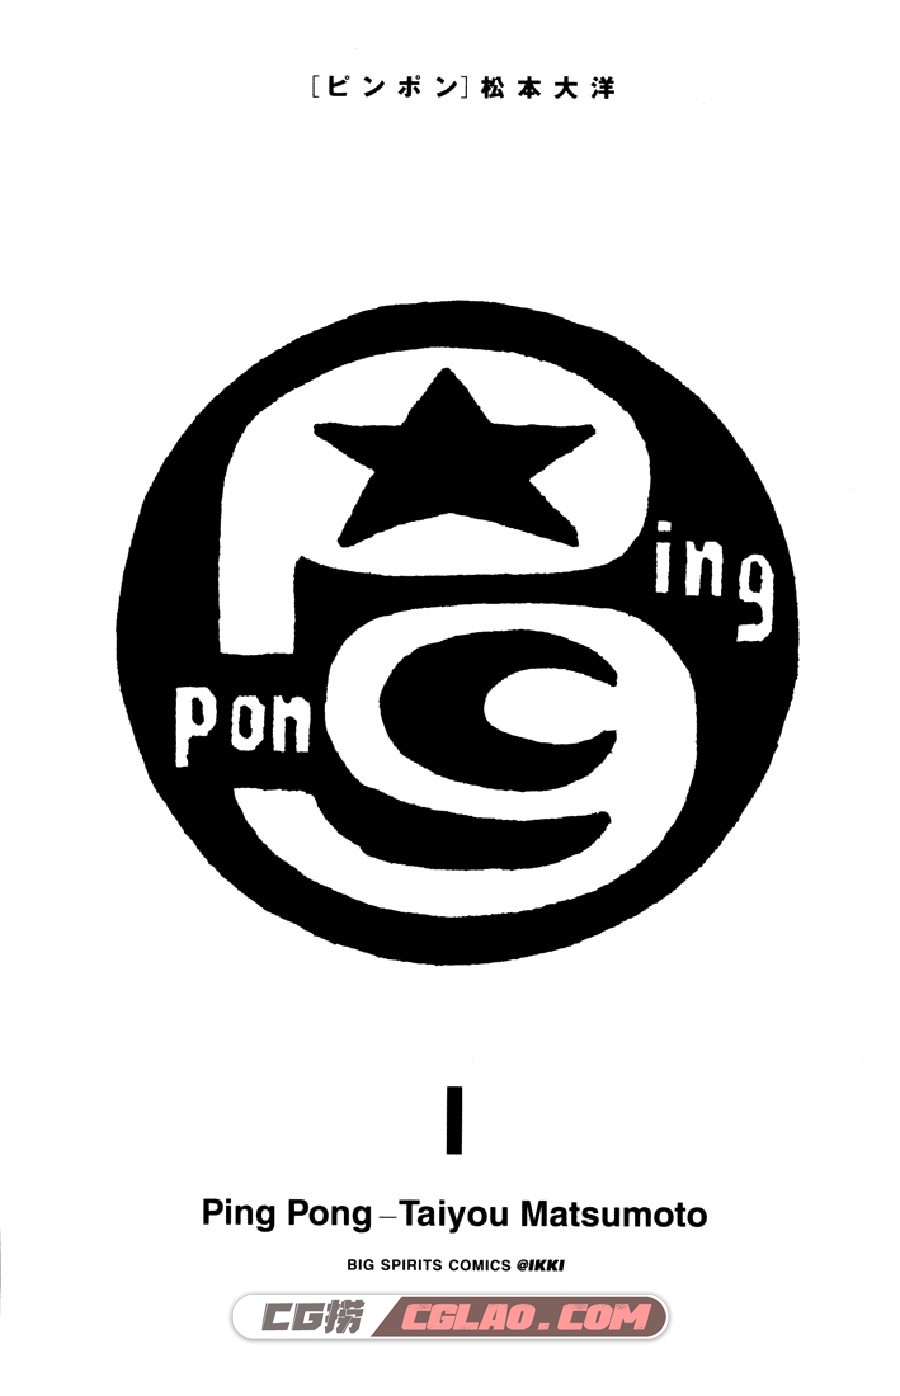 乒乓pingpong 松本大洋 1-5卷 漫画全集完结下载 百度网盘,PingPong_v01c01p003.jpg